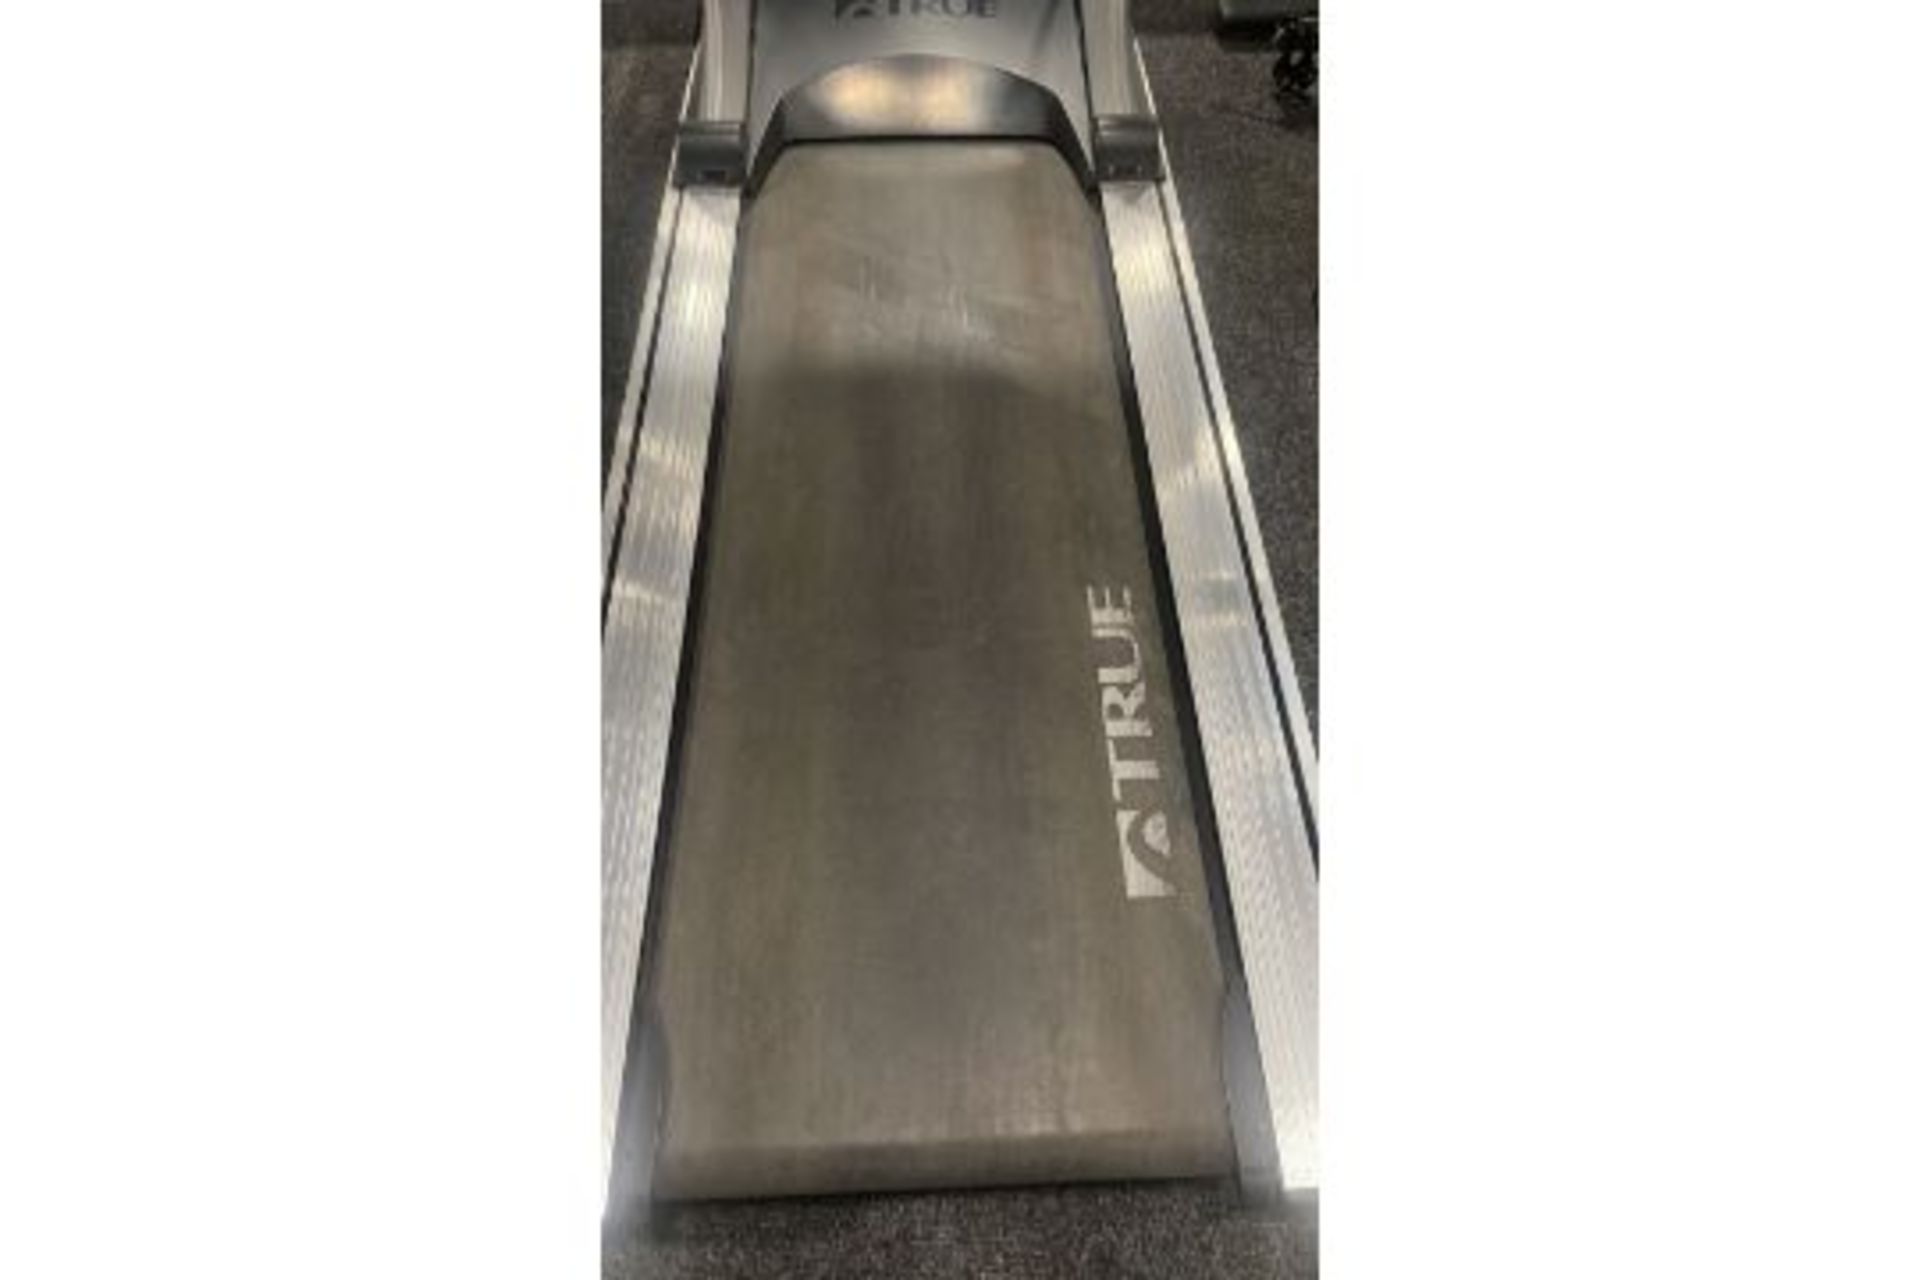 True Fitness 600 Treadmill - Image 5 of 5